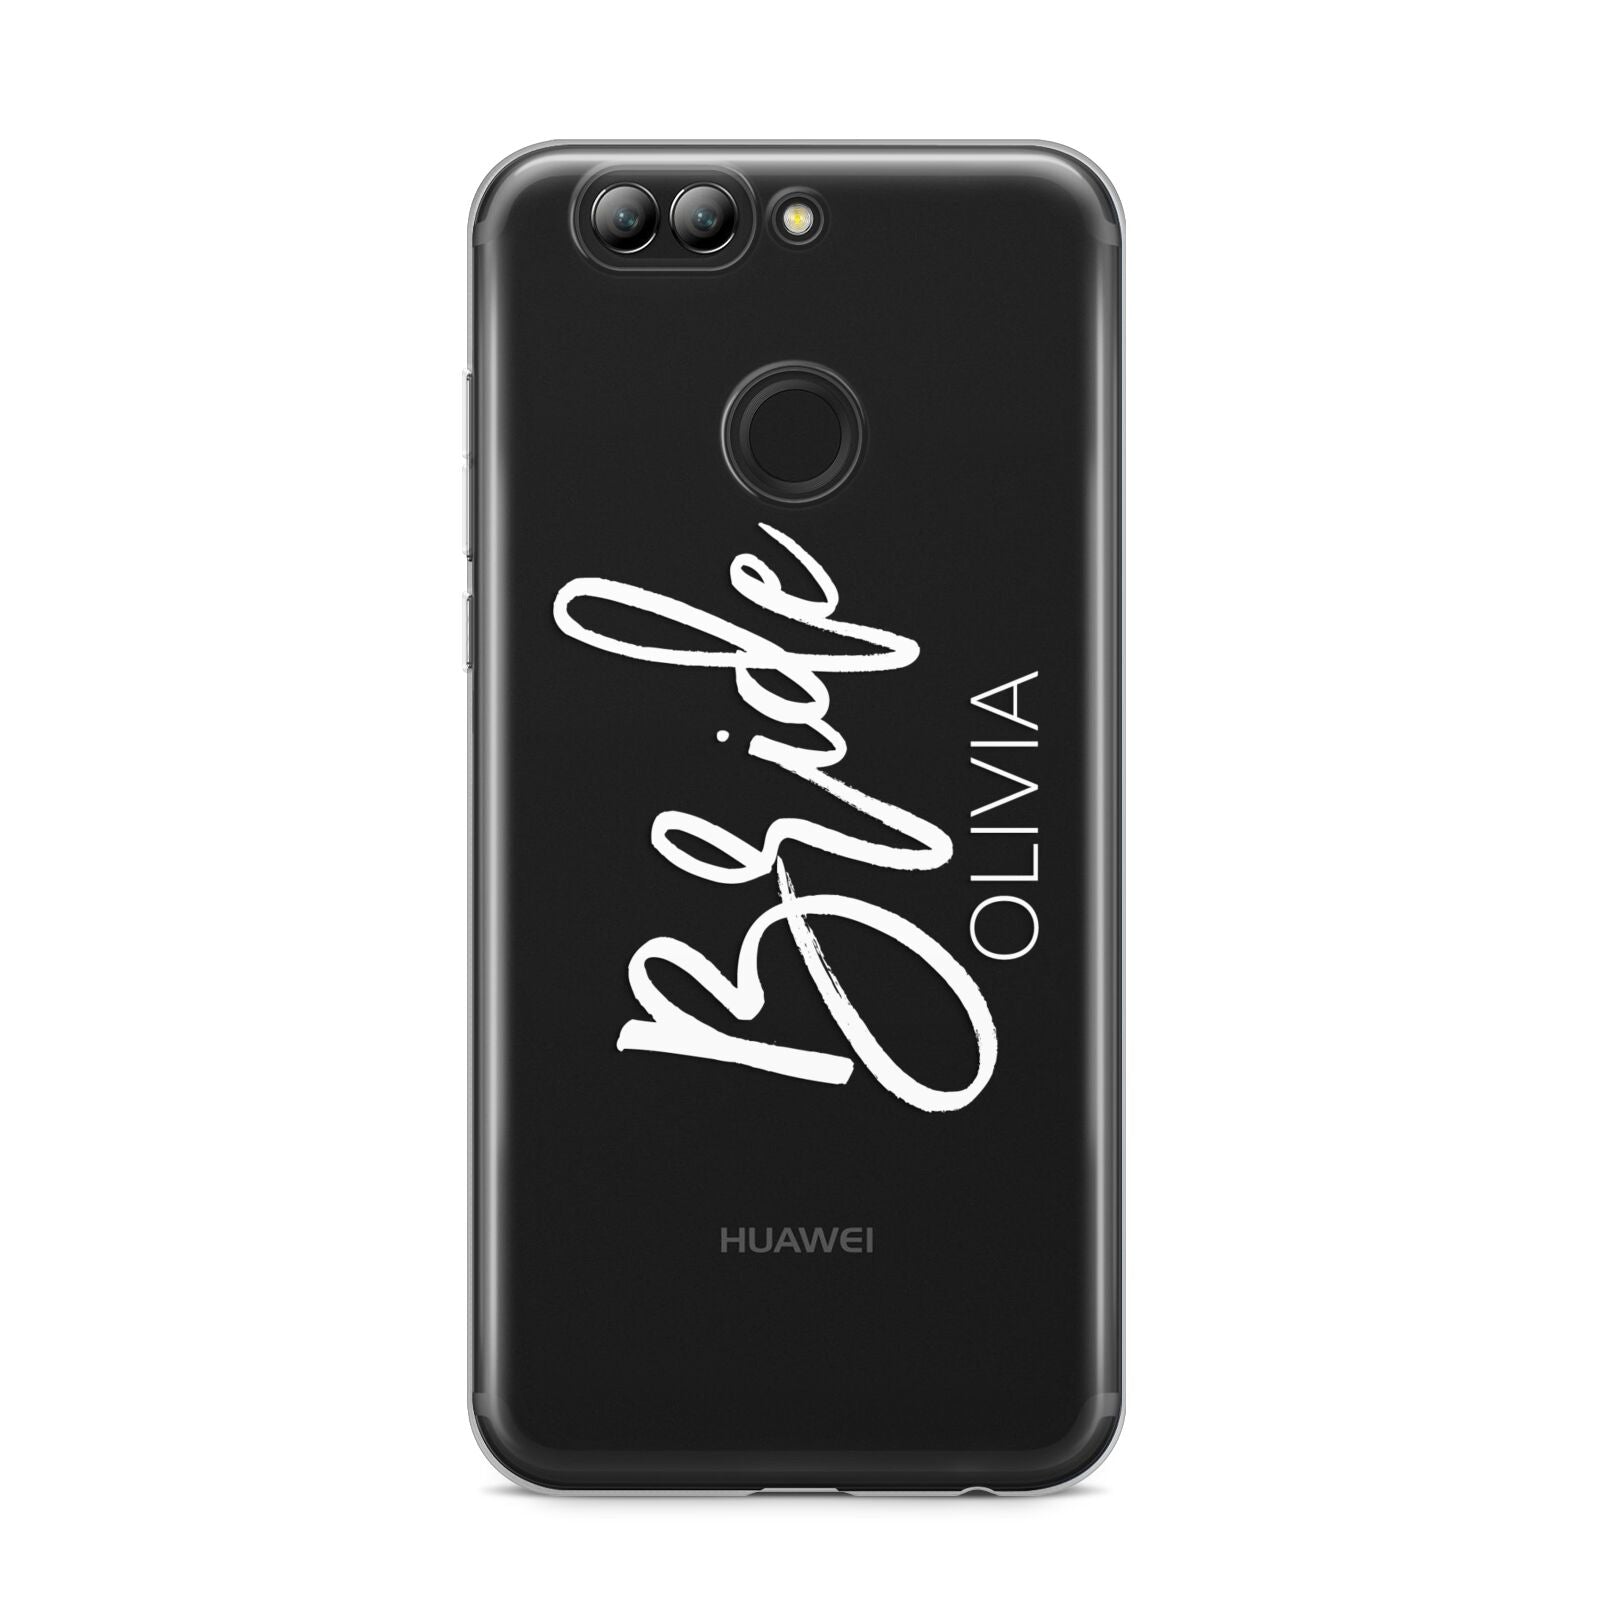 Personalised Bride Huawei Nova 2s Phone Case